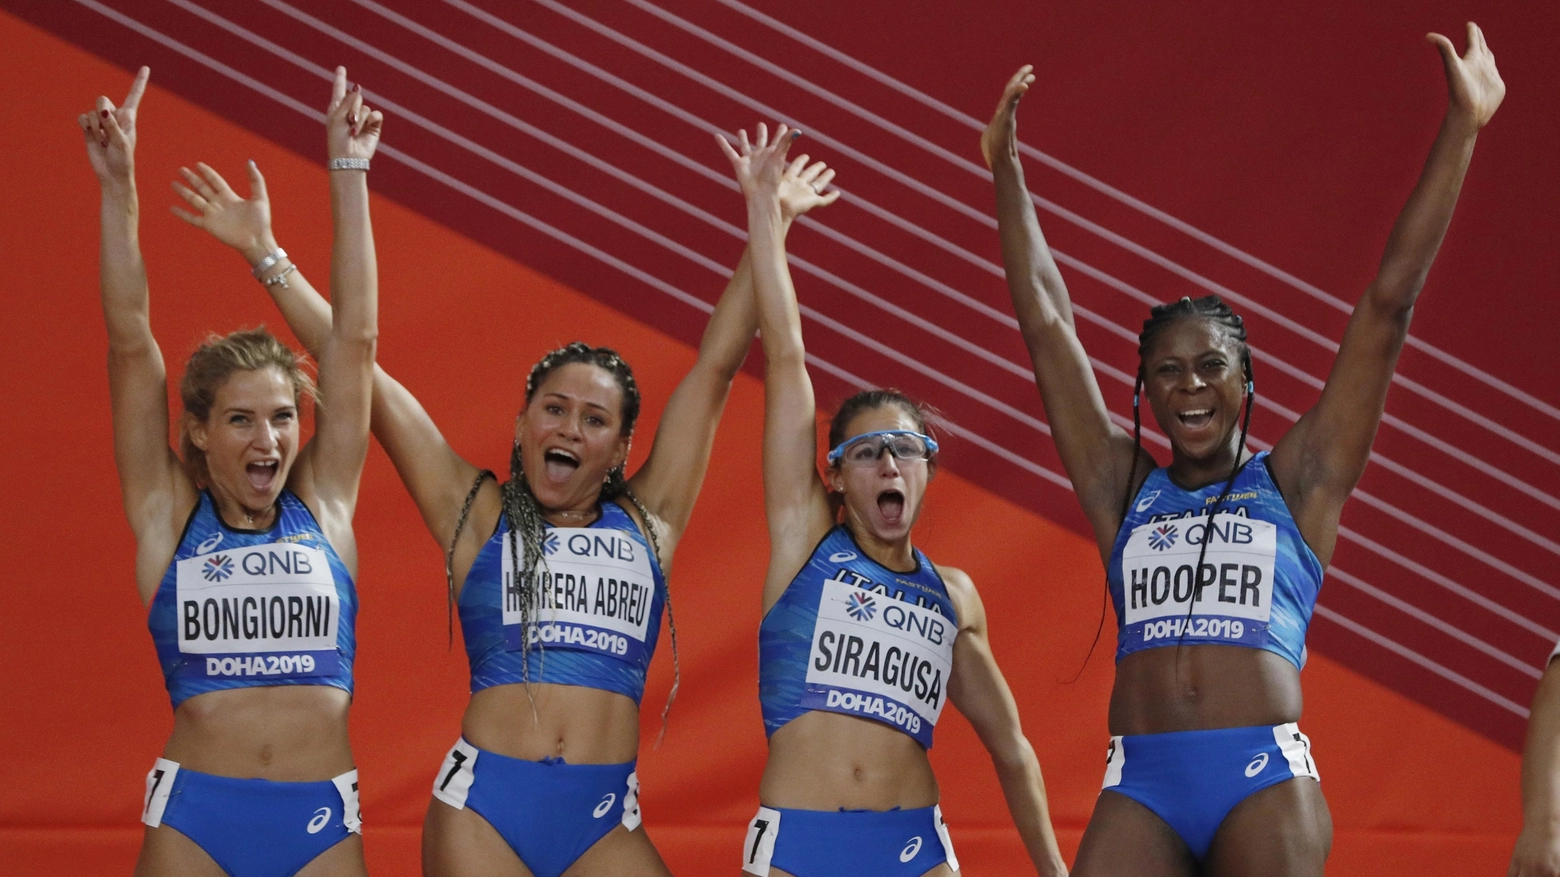 Olimpiadi, Anna Bongiorni (a sinistra) conquista il pass per le olimpiadi